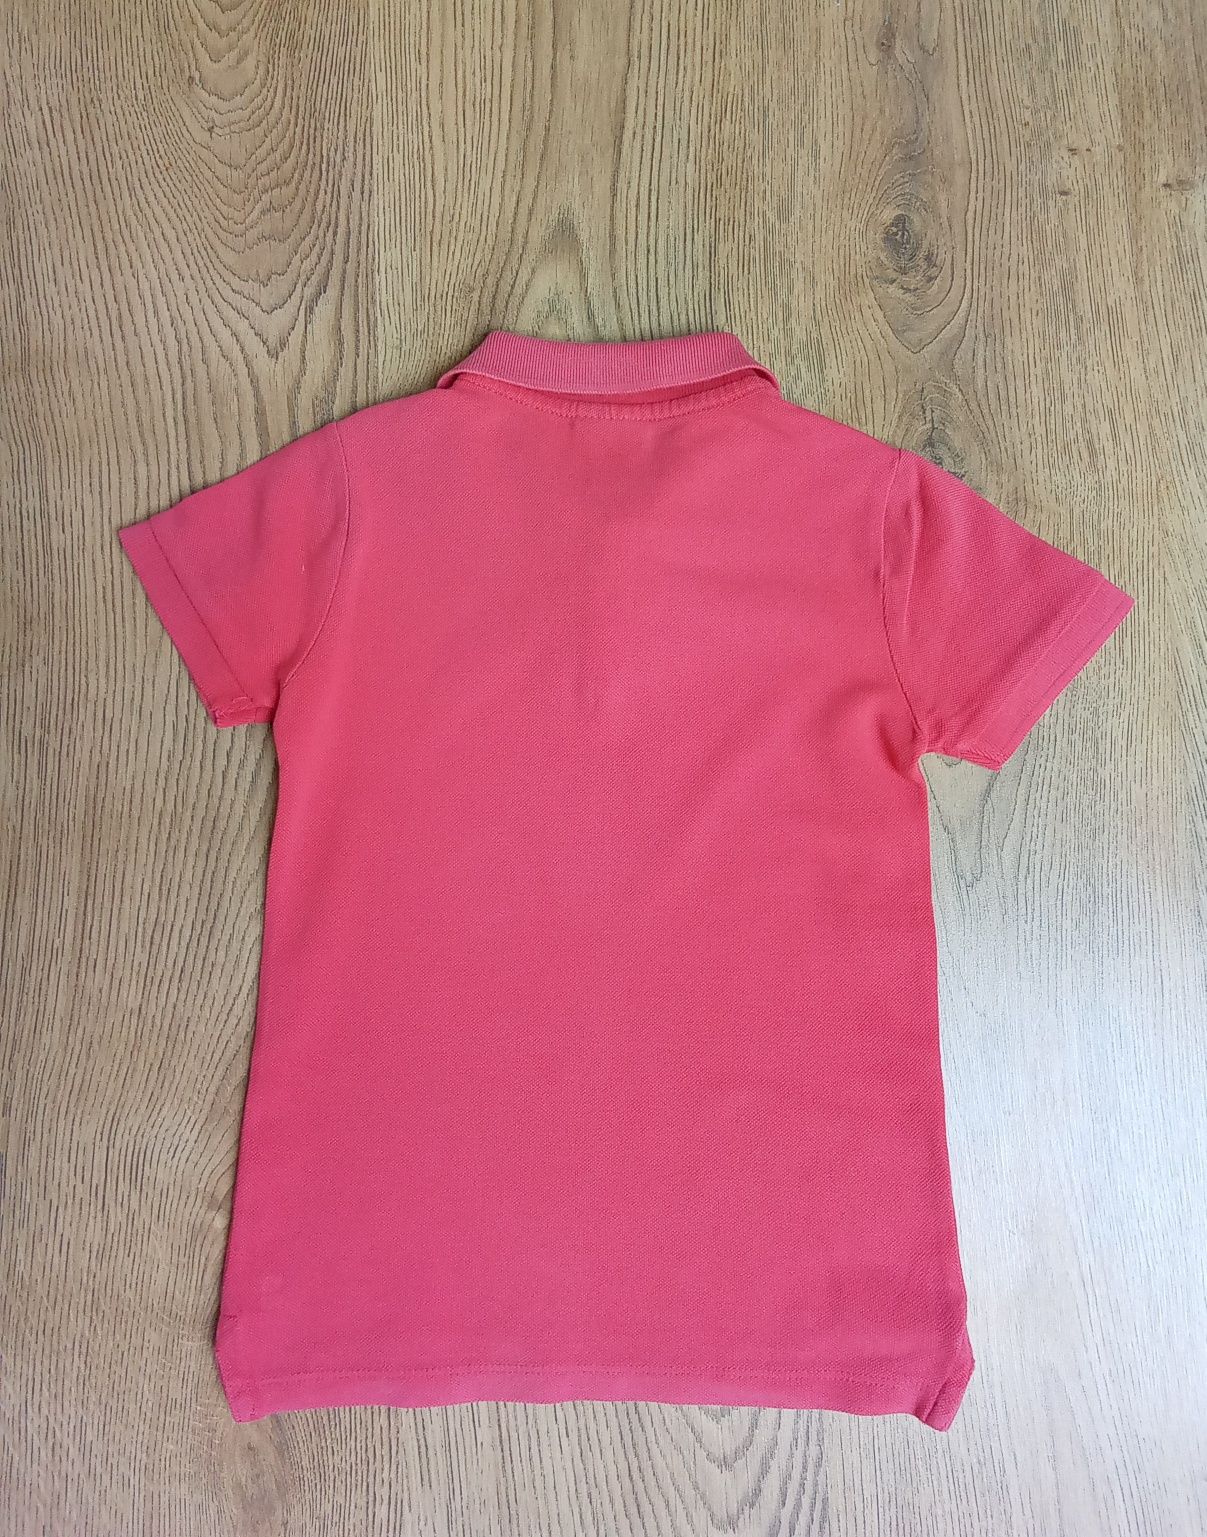 Koszulka Zara 116